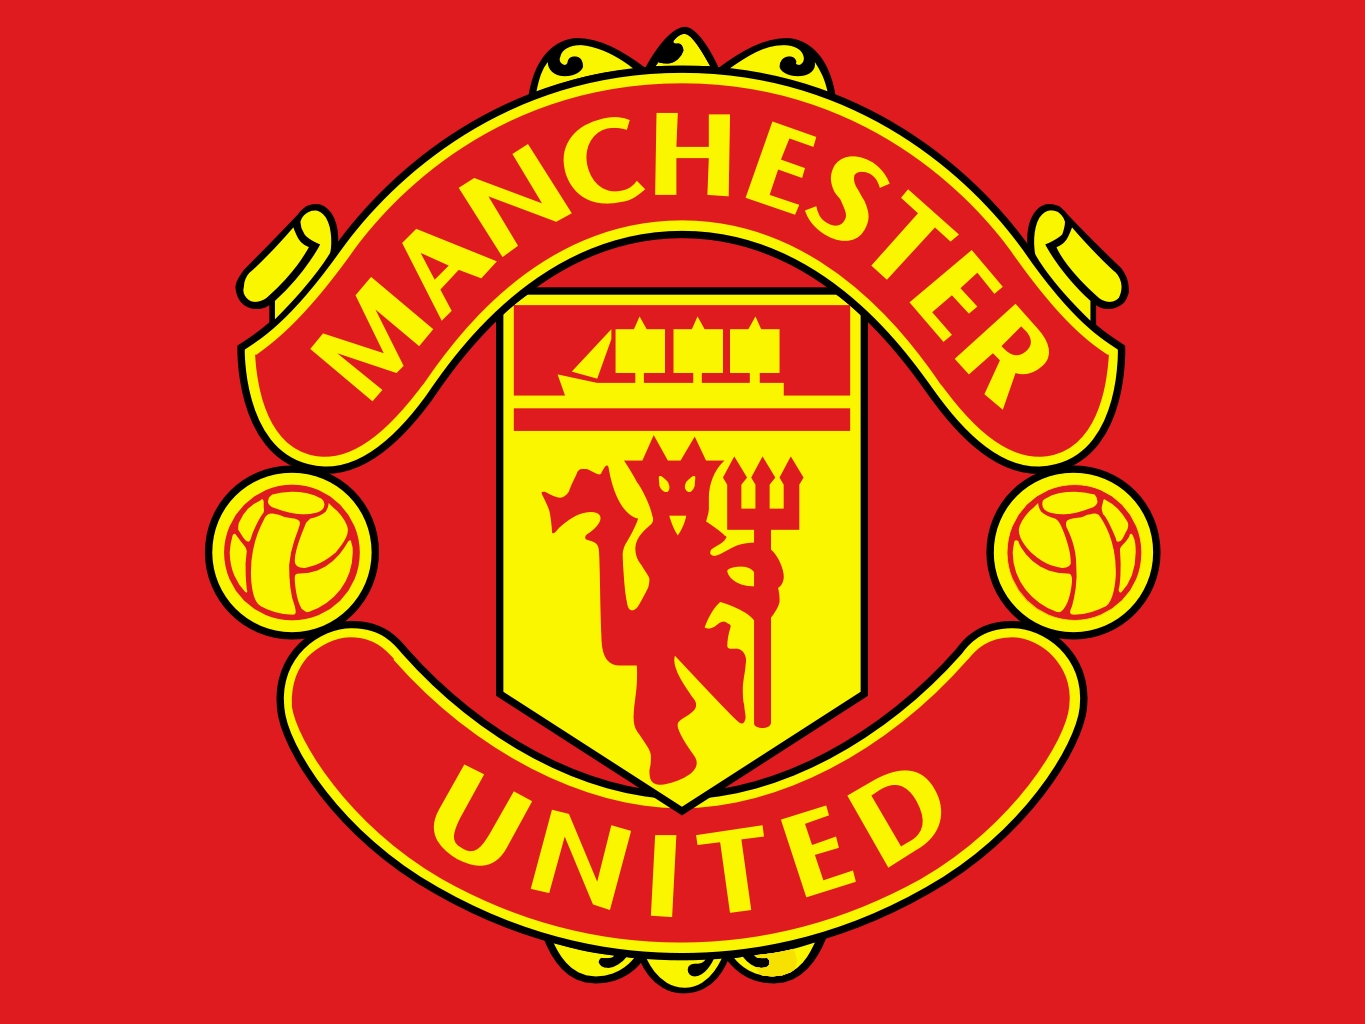 Manchester United Logo Large Image